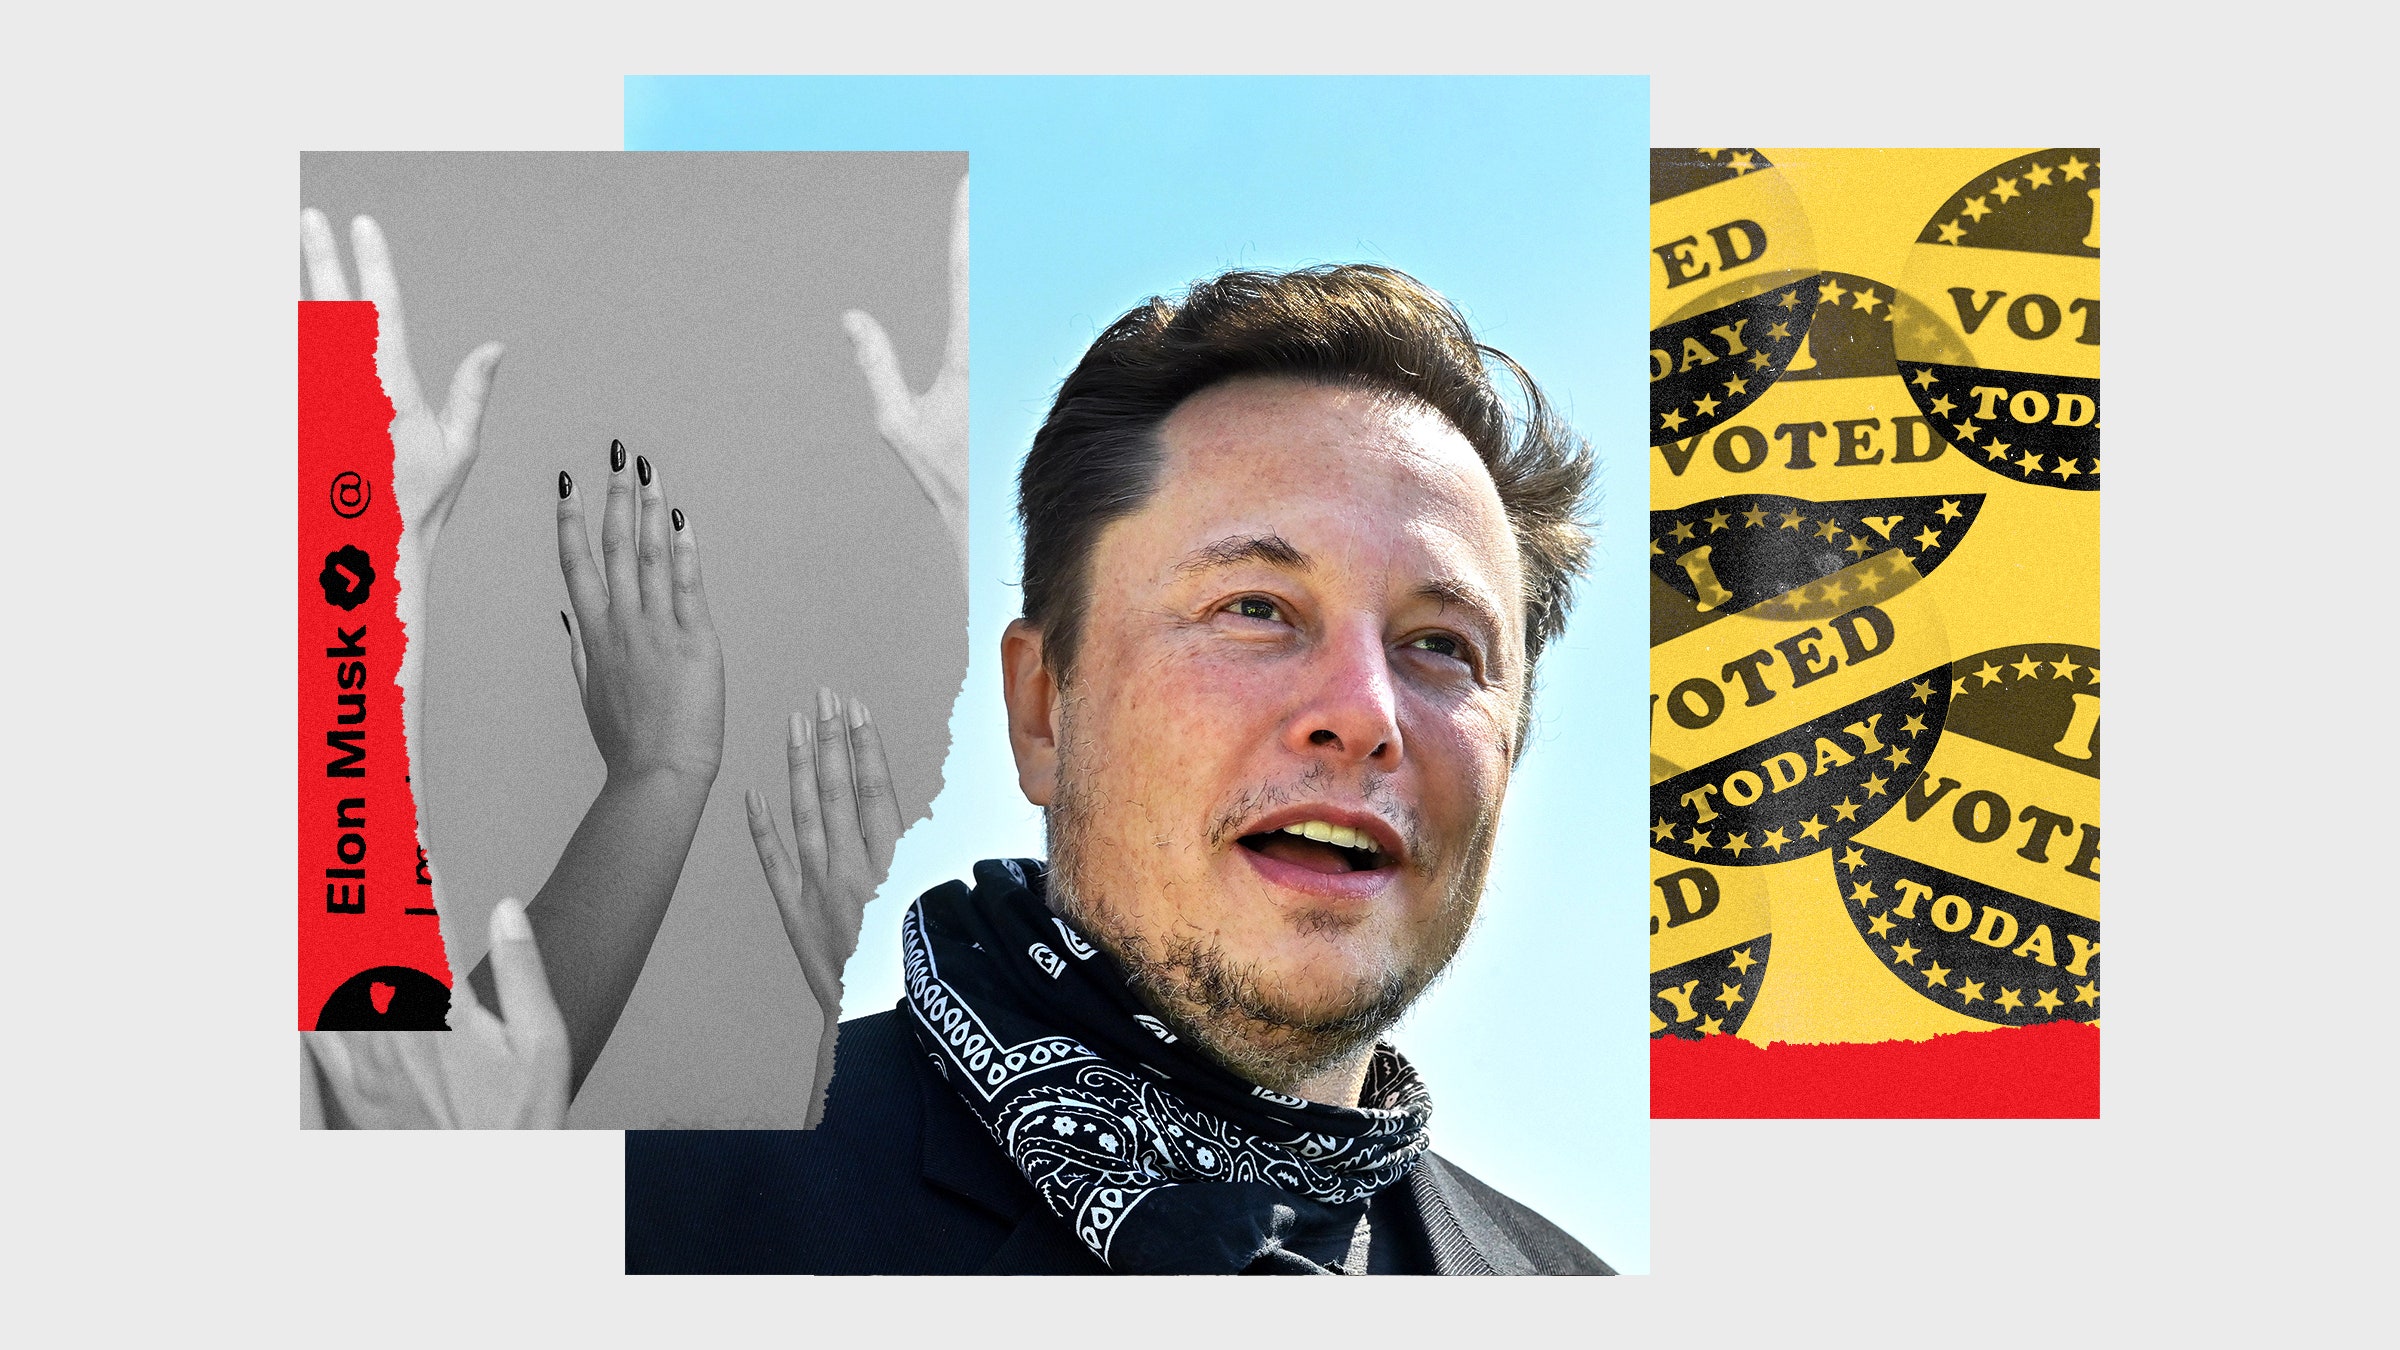 Colagem da máscara de imagens de Elon com eu votei adesivos e as mãos levantadas